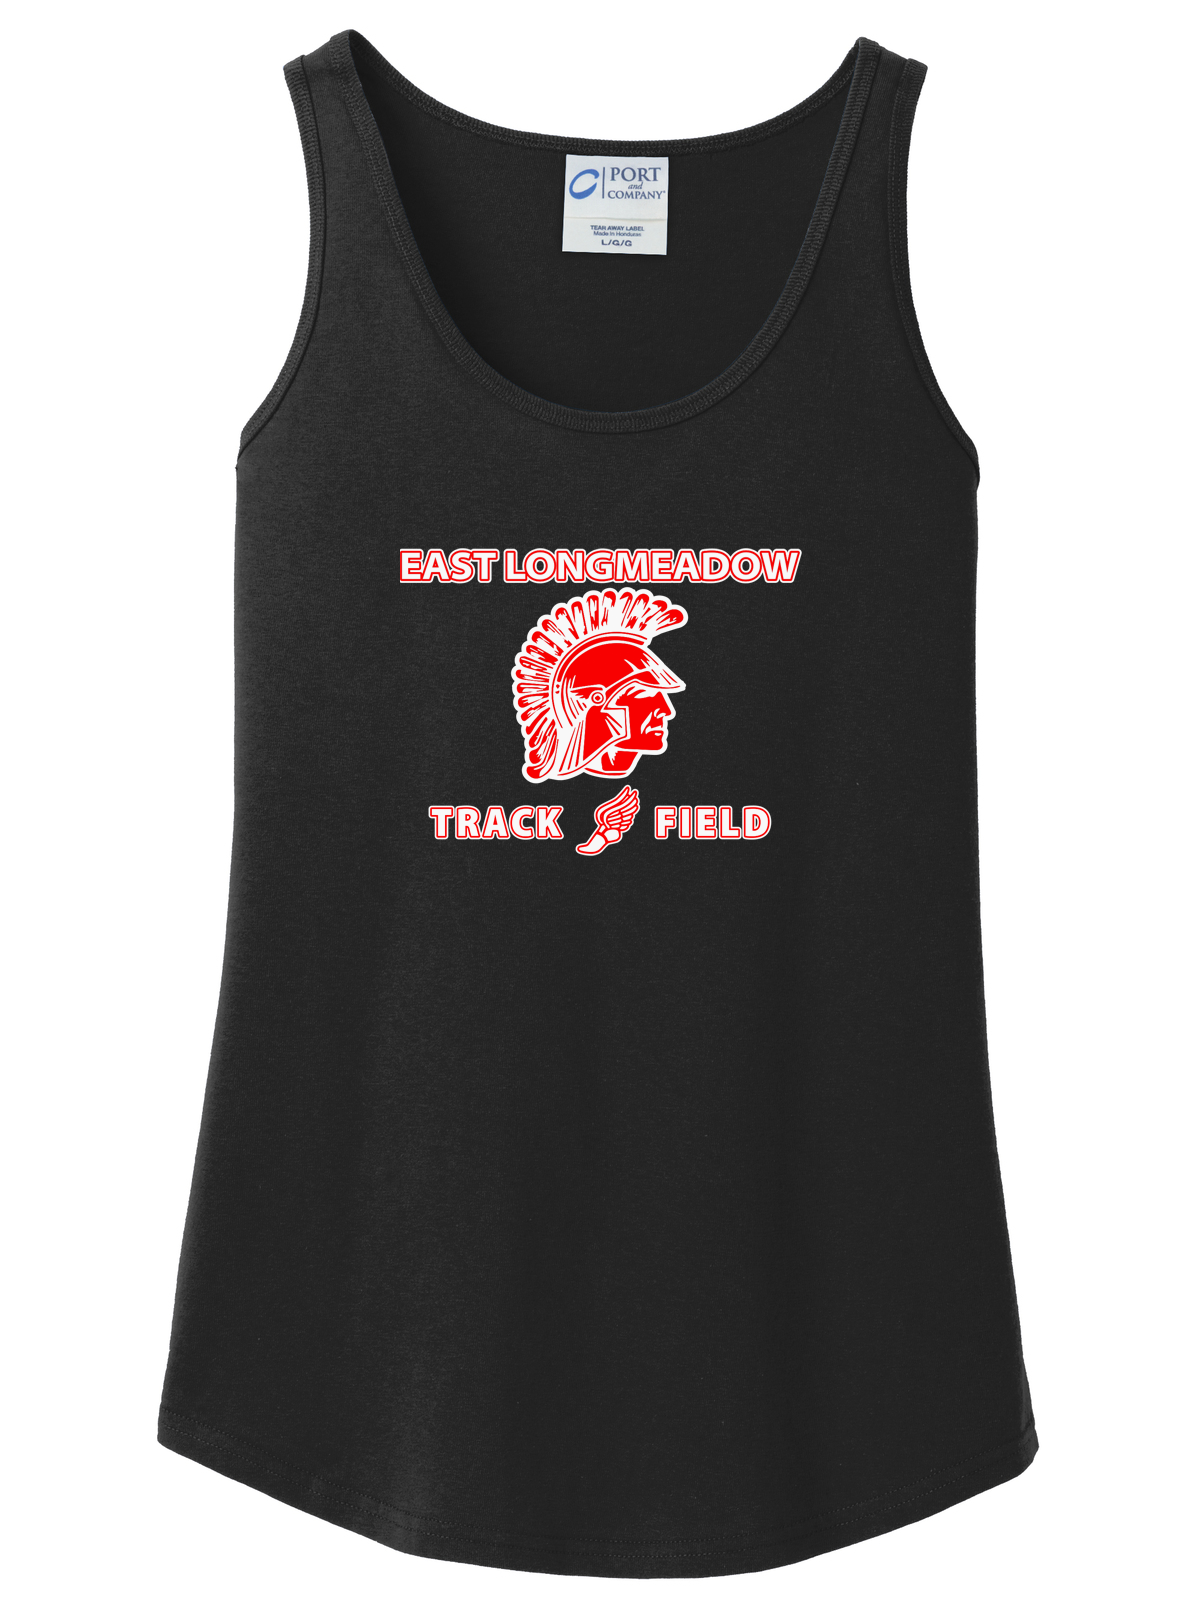 East Longmeadow Track and Field Women's Black Tank Top